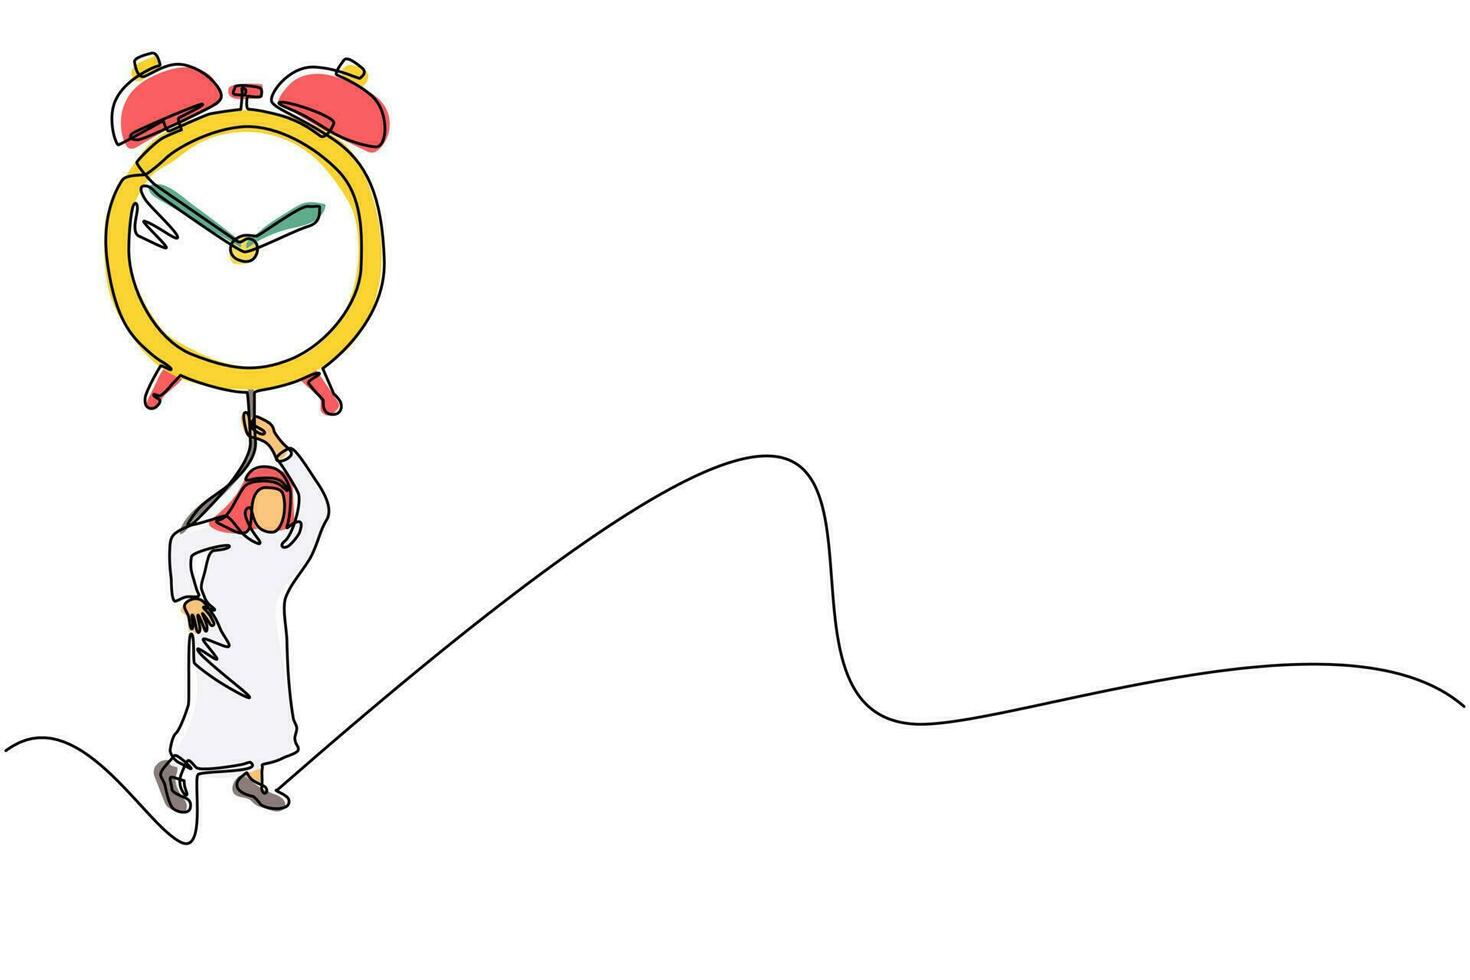 dibujo continuo de una línea hombre de negocios árabe, gerente o empleado que vuela con un reloj despertador de globo grande y sostenga la cuerda. metáfora empresarial de gestión del tiempo. ilustración de vector de diseño de dibujo de una sola línea